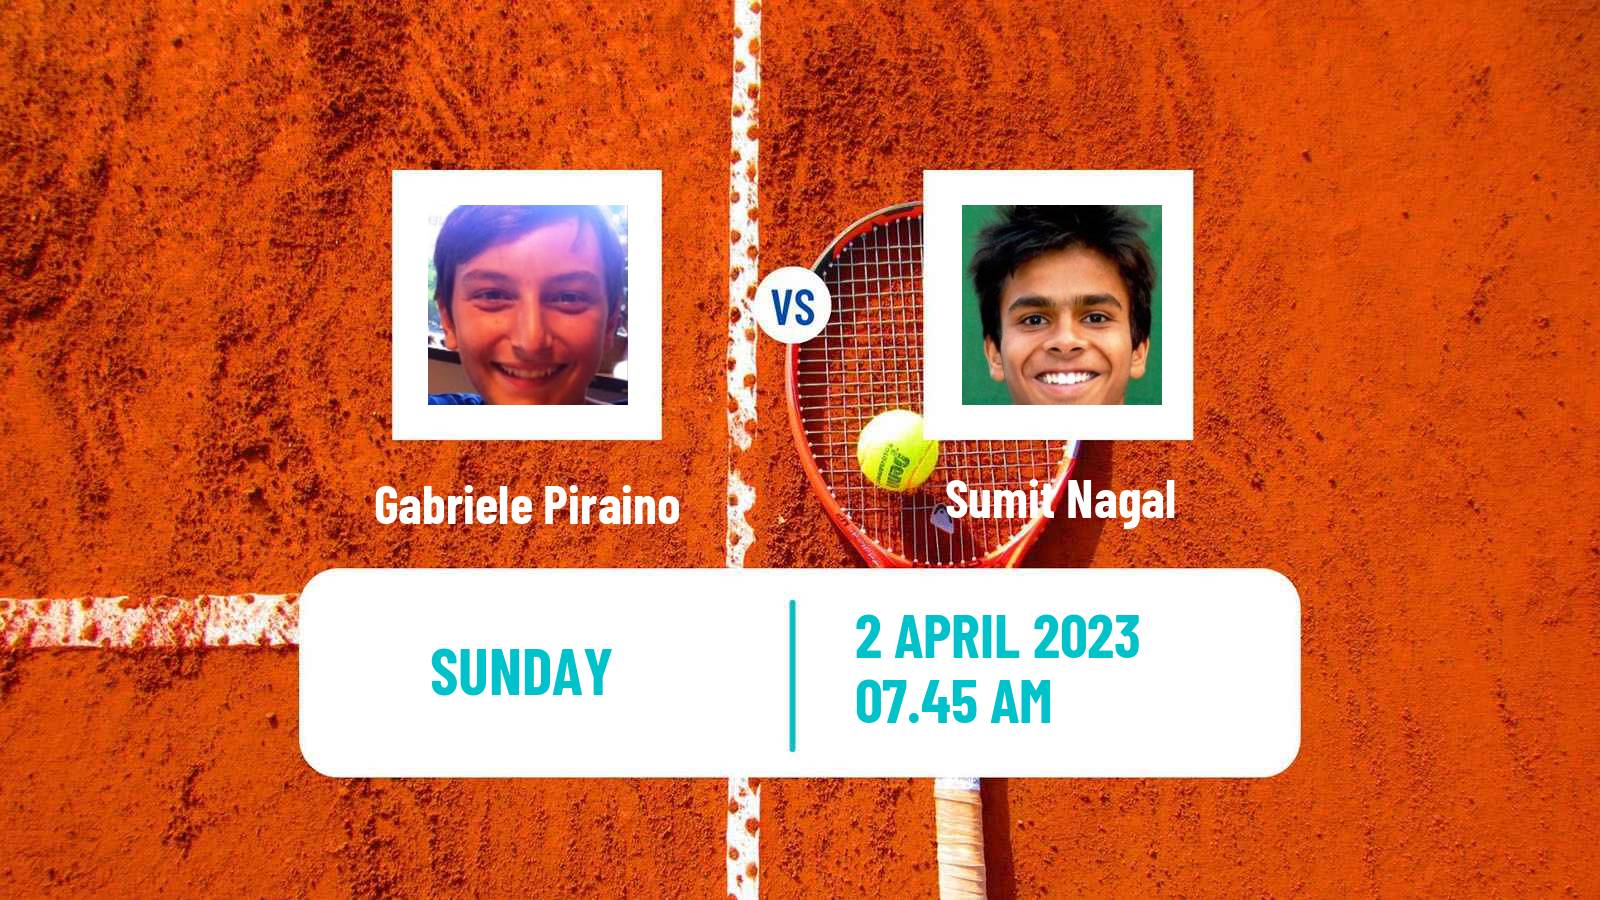 Tennis ATP Challenger Gabriele Piraino - Sumit Nagal